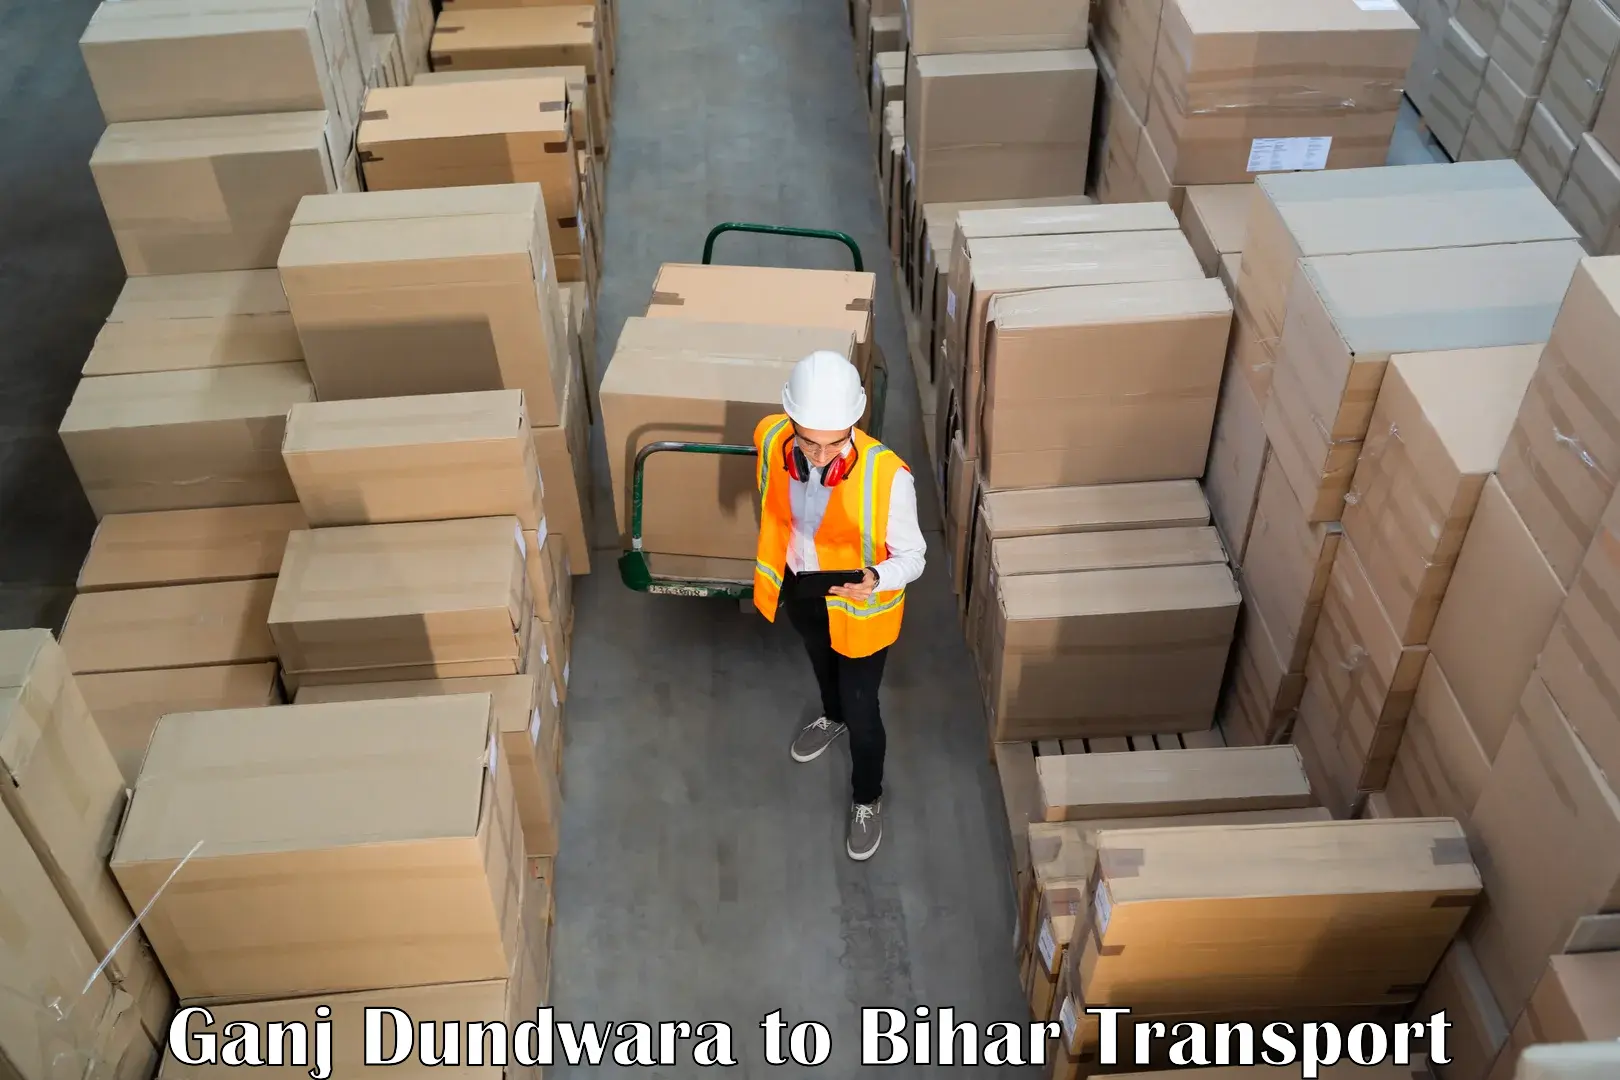 Container transport service Ganj Dundwara to Nalanda